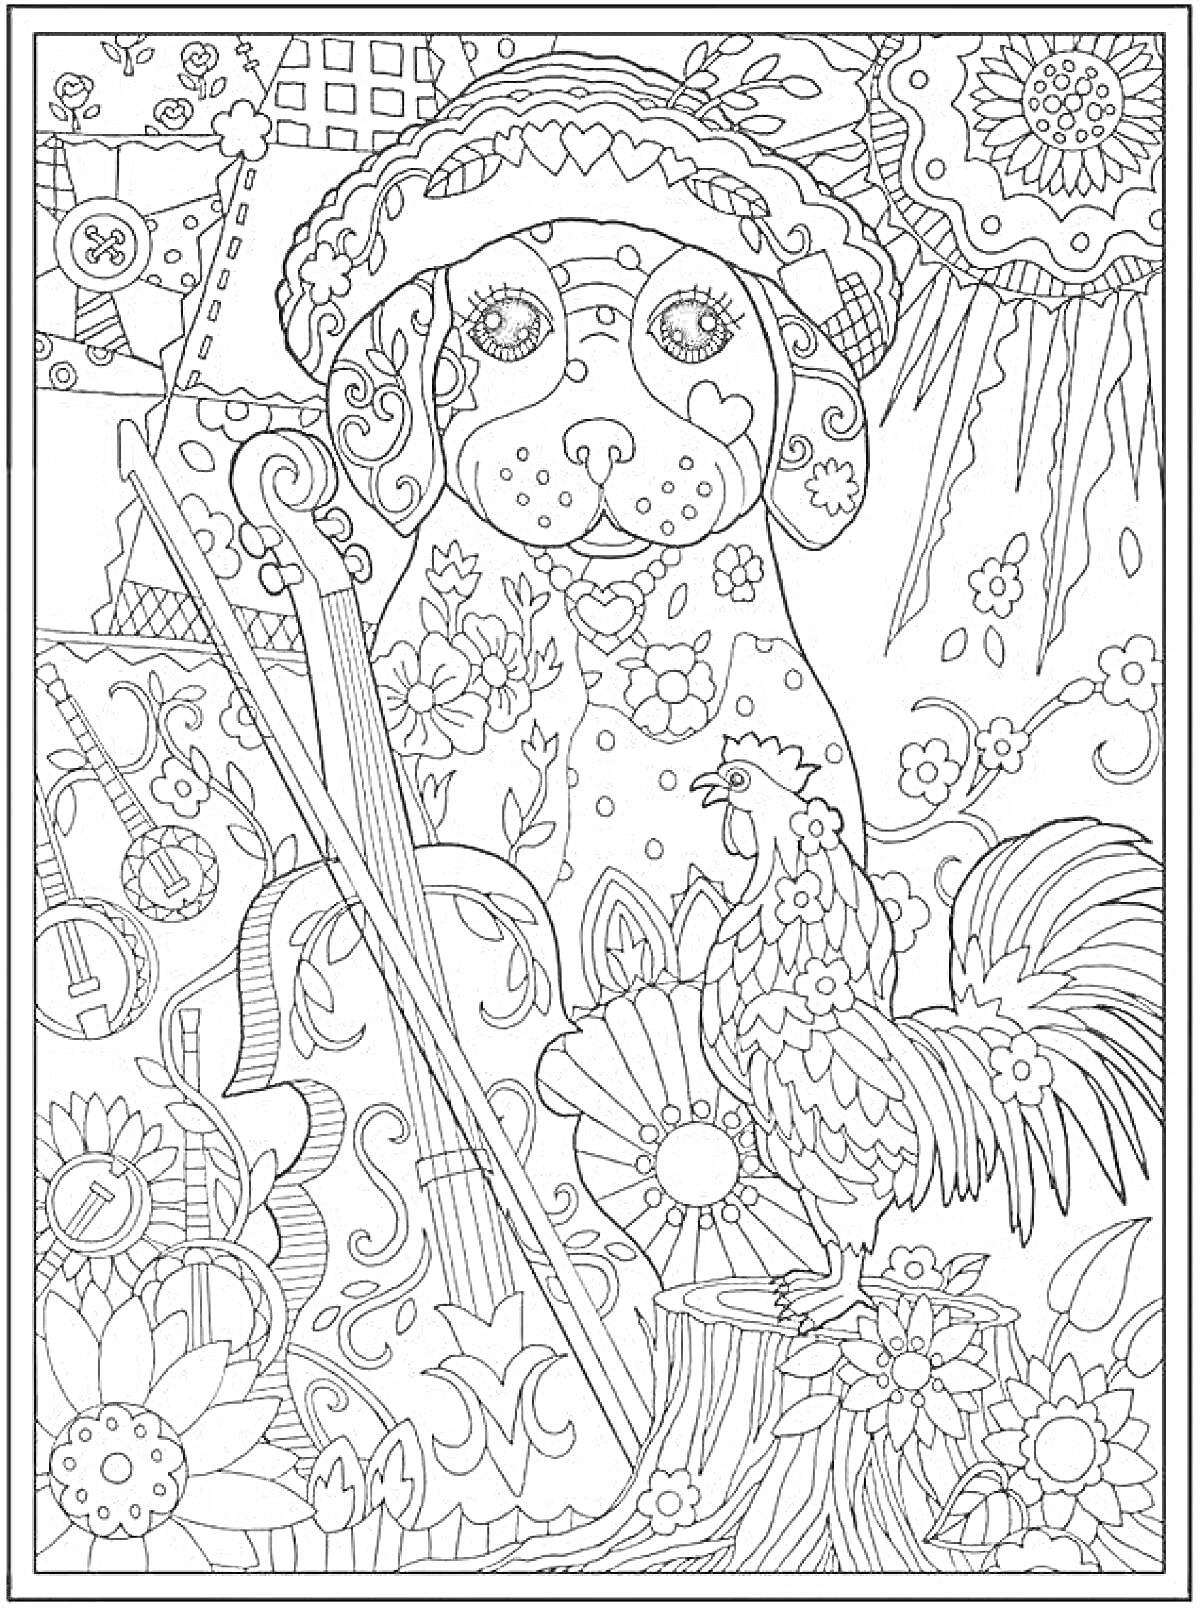 На раскраске изображено: Собака, Шляпа, Музыкальный инструмент, Цветы, Петух, Узоры, Природа, Антистресс